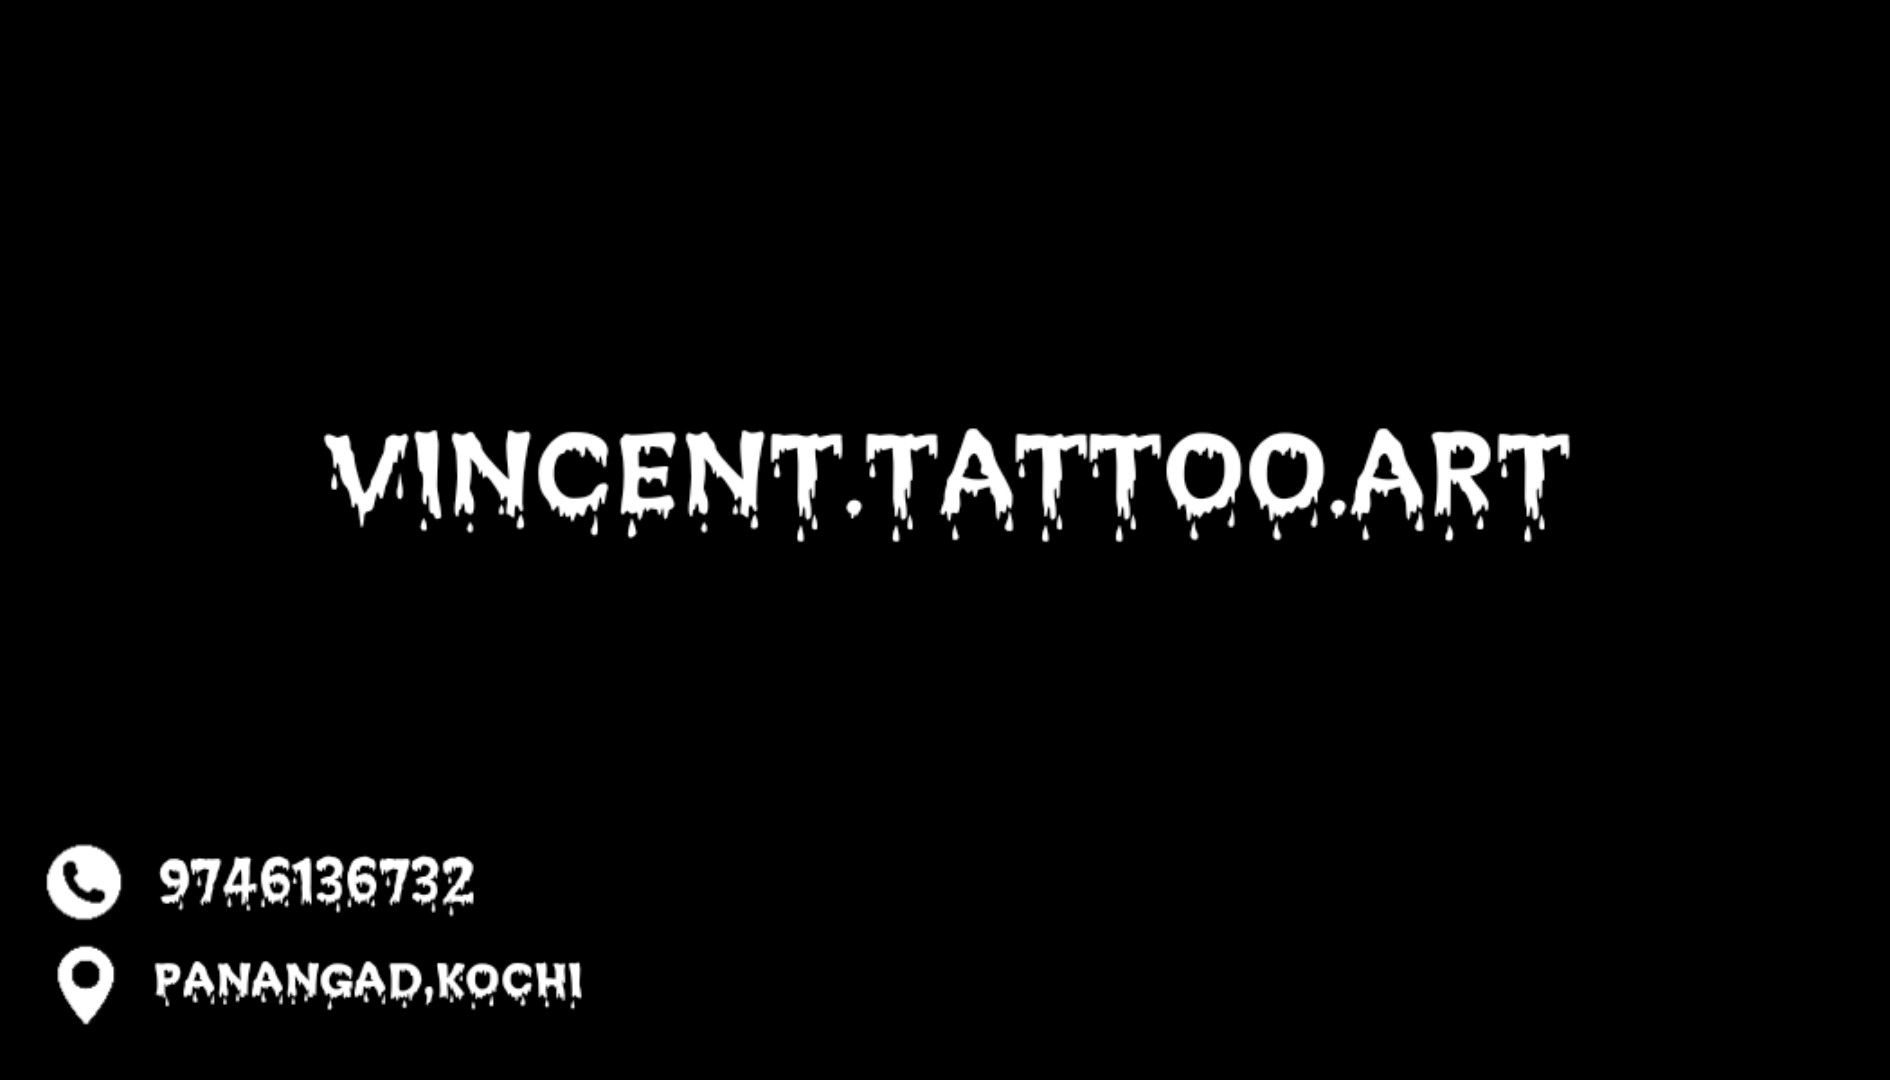 kochi #tattoo #tattooshop | Instagram